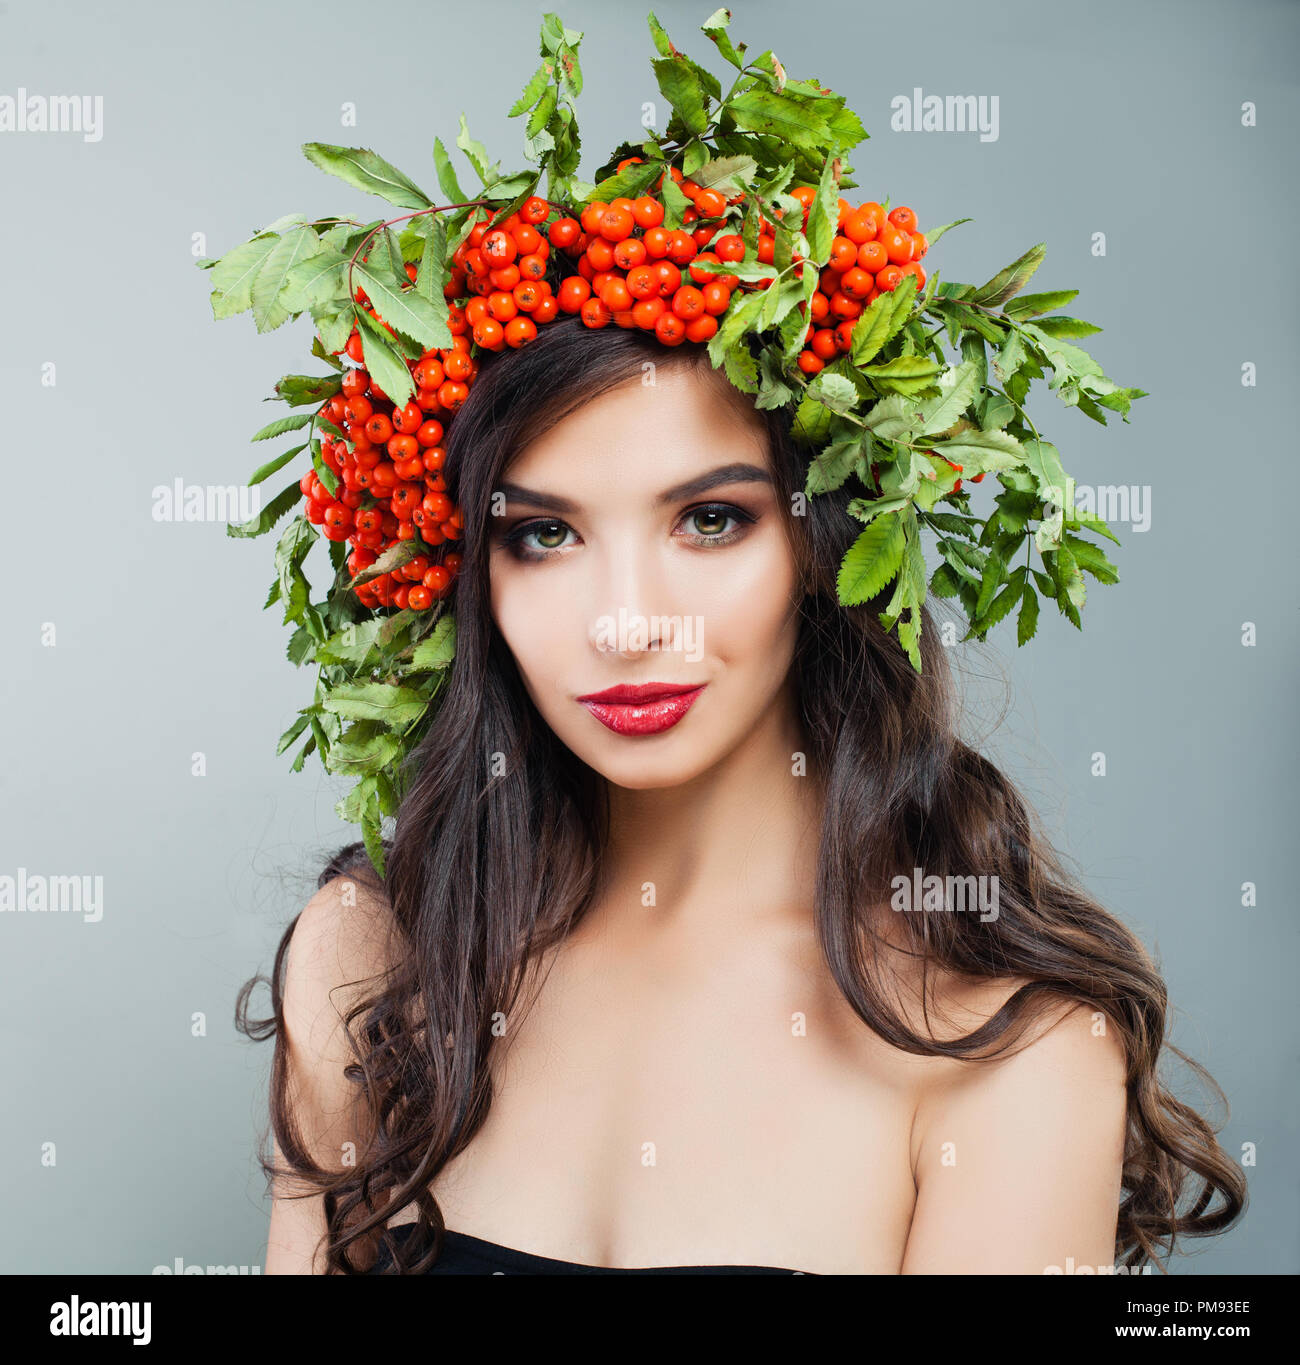 Junge brunette woman fashion Modell mit gesunden curly Frisur, Make-up und roten Beeren und grünen Blättern im Haar Stockfoto